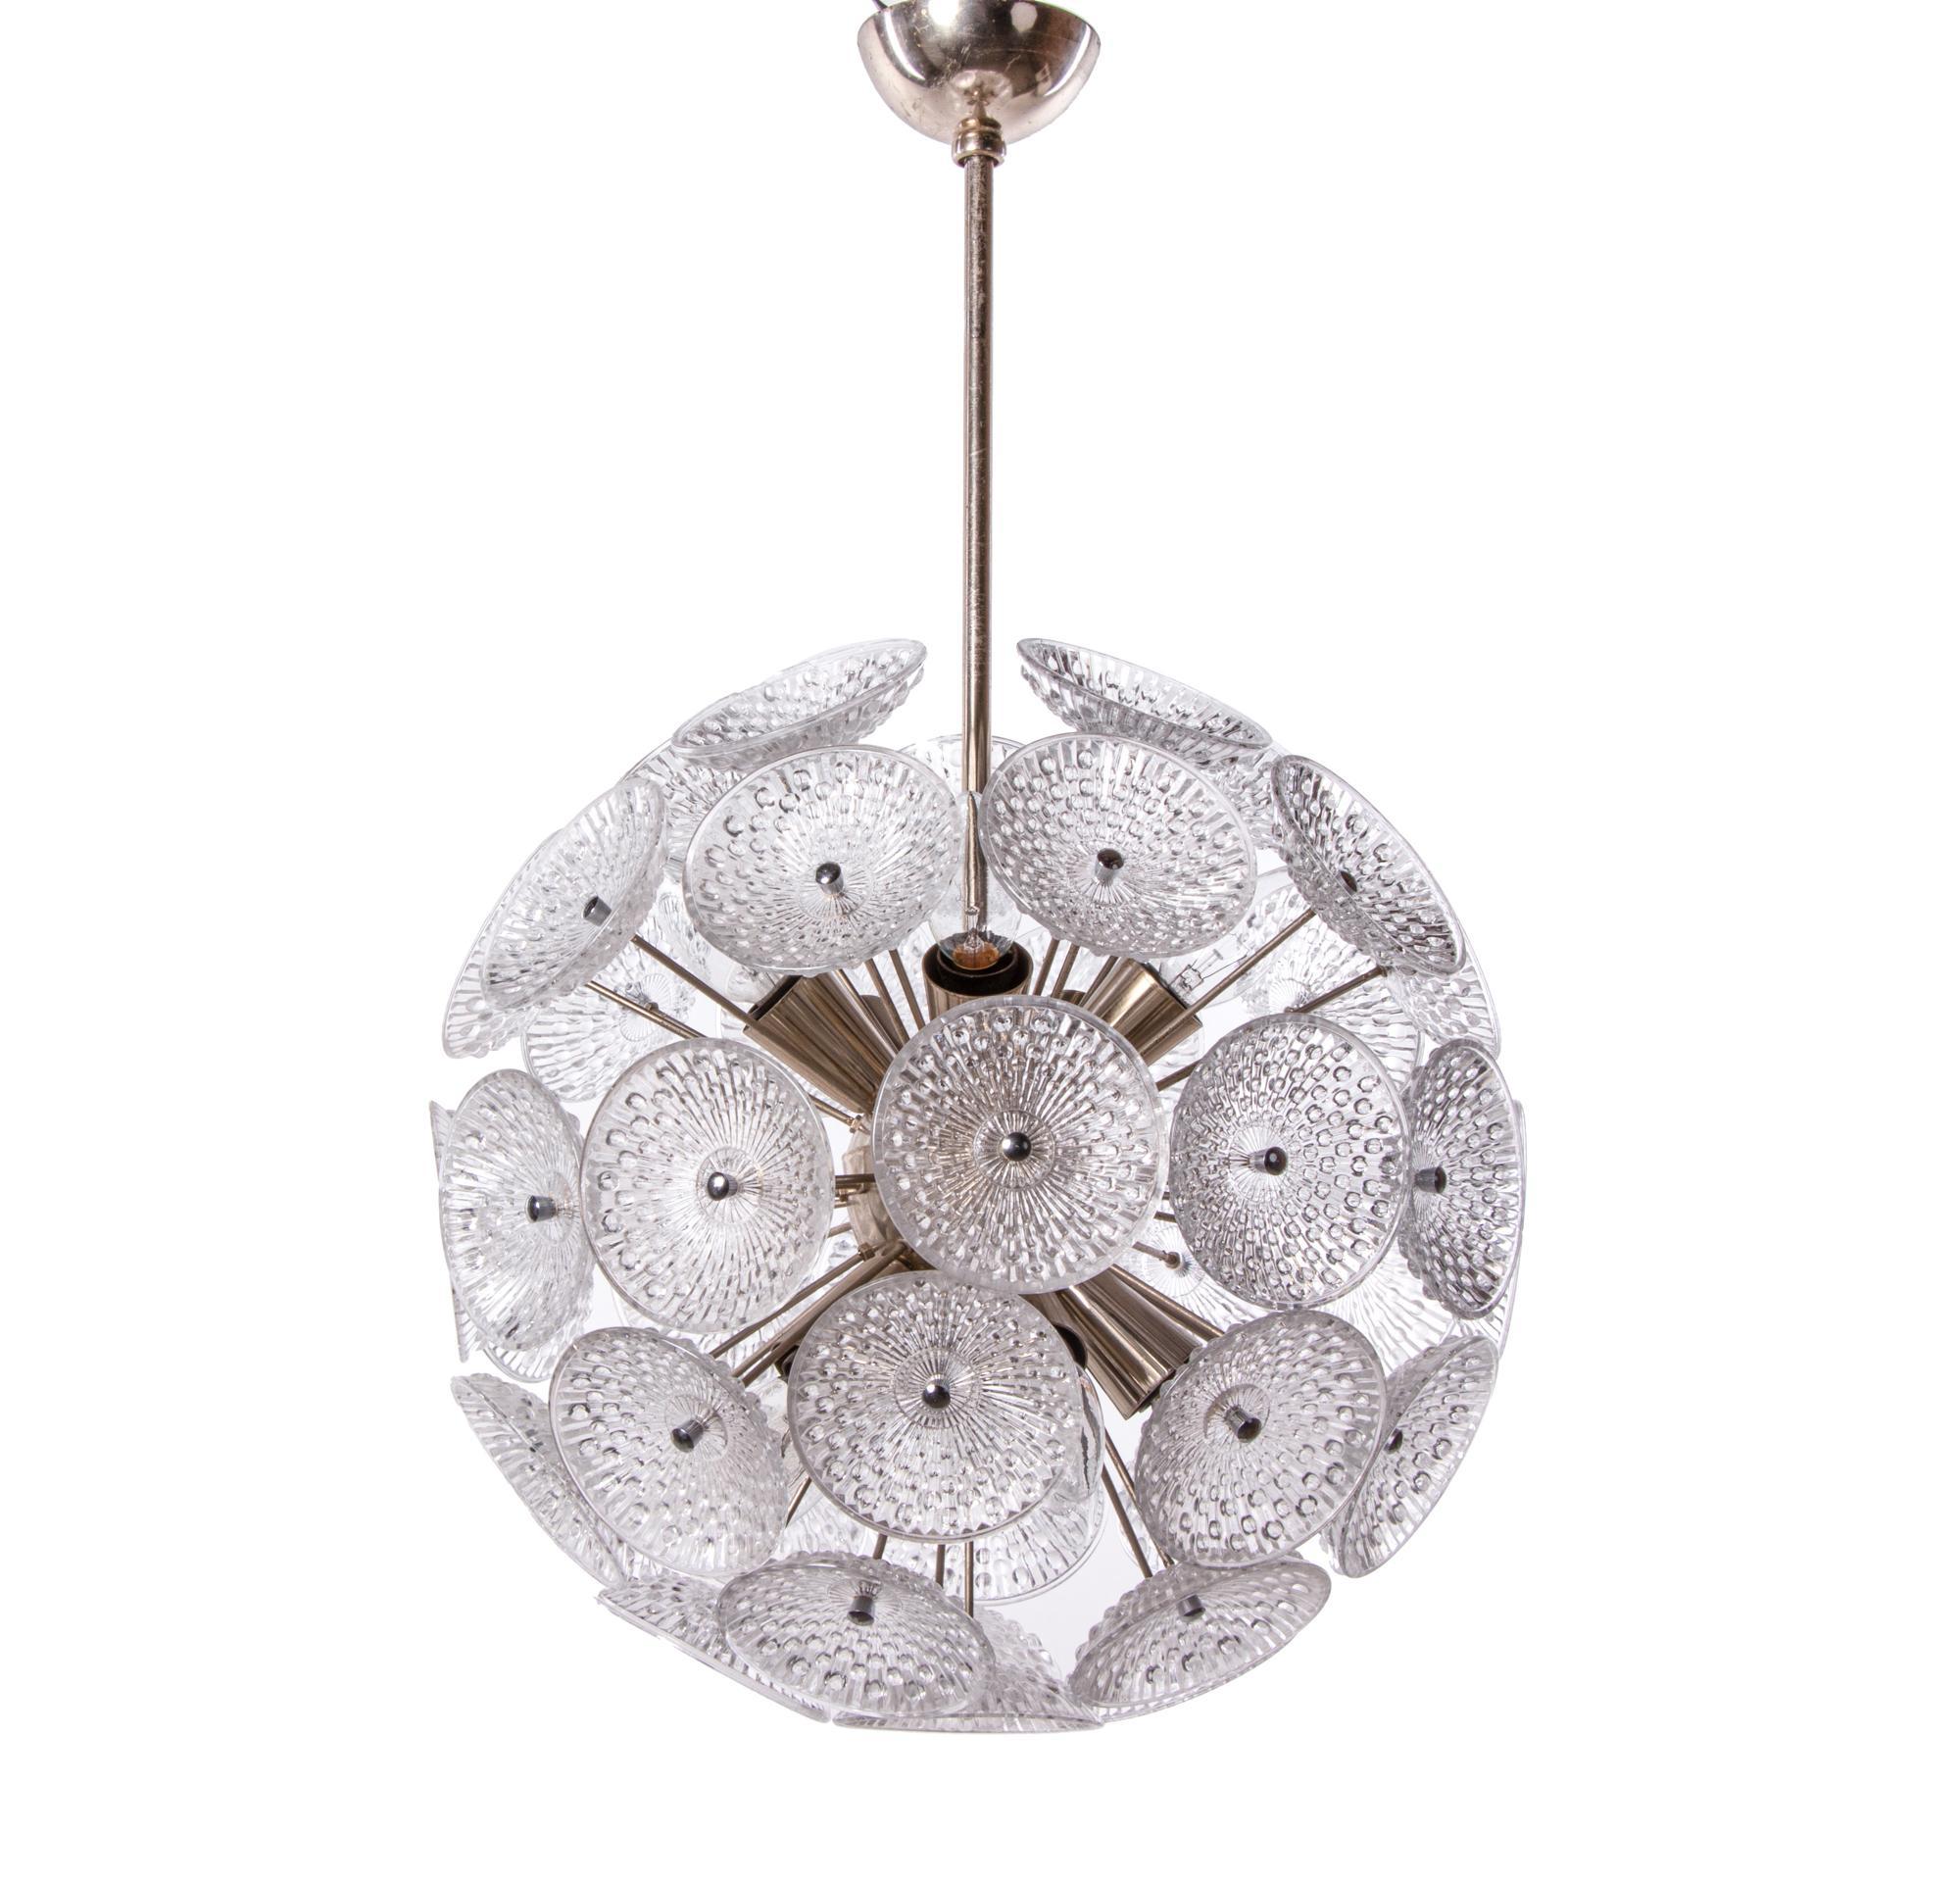 Elegant lustre Sputnik avec des fleurs en verre de pissenlit sur une monture en laiton chromé. Le lustre éclaire magnifiquement et offre beaucoup de lumière. Gemme de l'époque. Avec ce luminaire, vous faites une déclaration claire dans votre